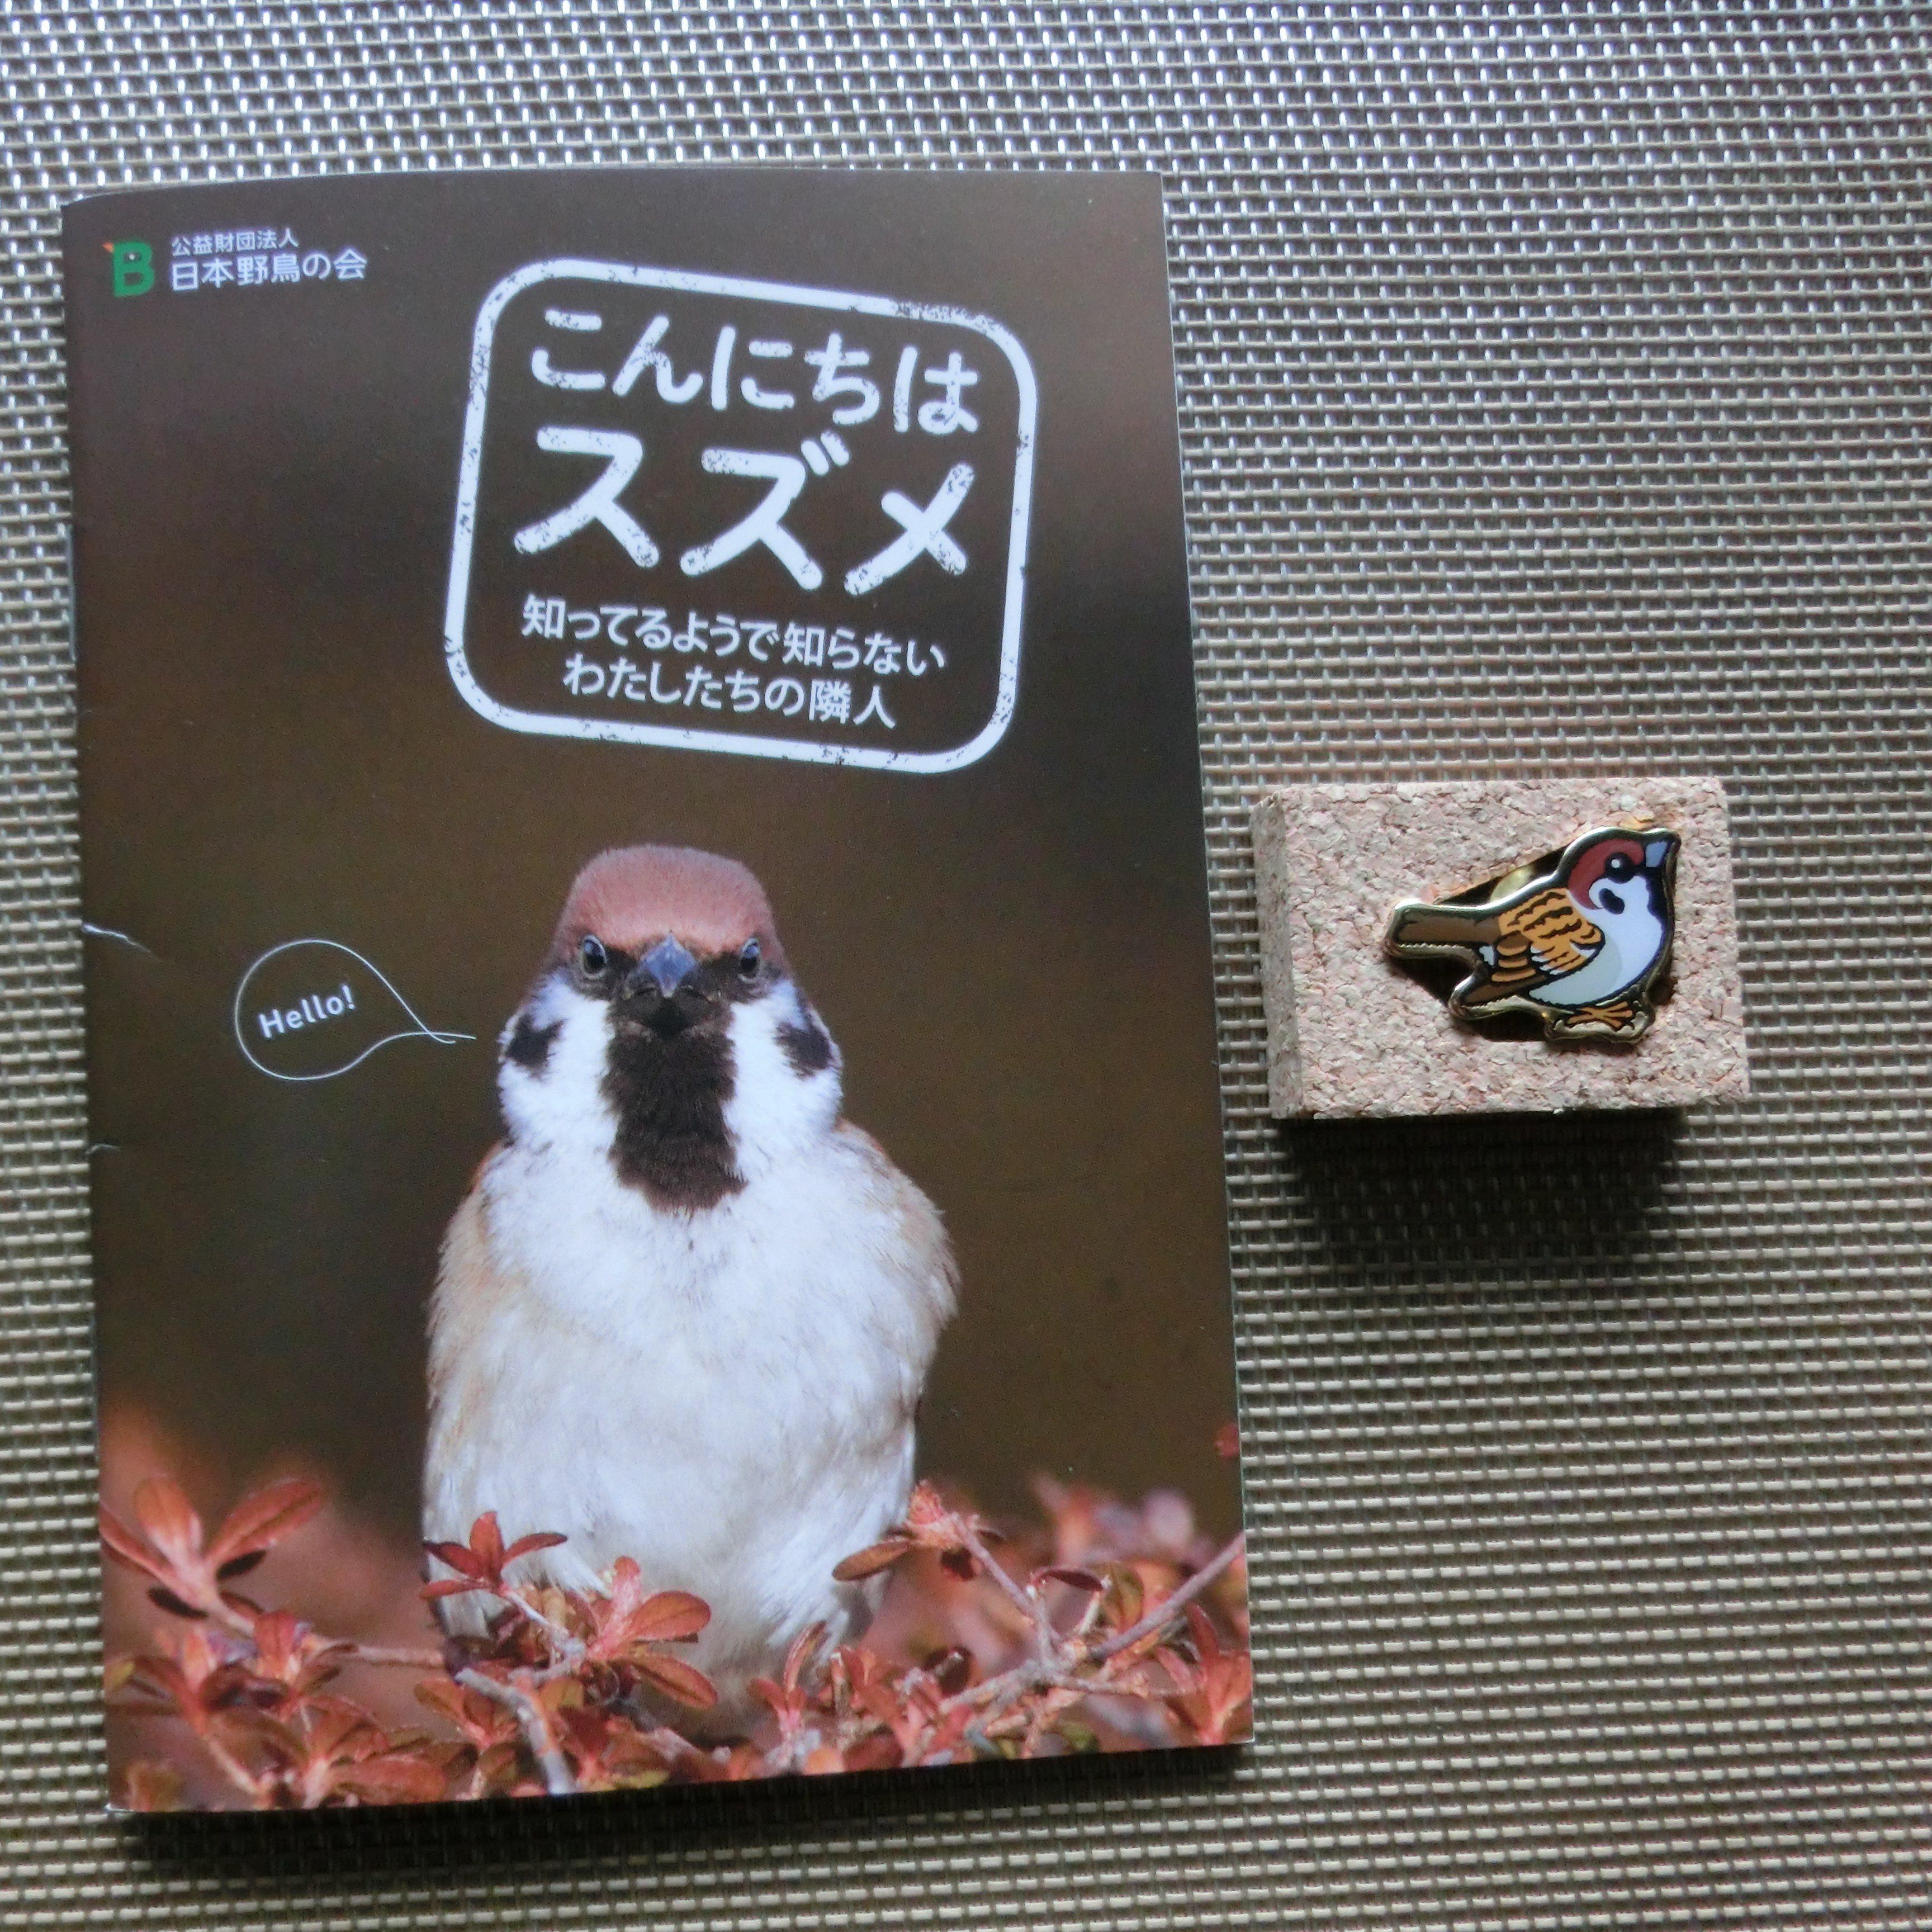 青木 信 小冊子 こんにちはスズメ を日本野鳥の会より無料でいただきました ほのぼの小写真集です お礼として寄付をしてバードメイト ピンバッジ スズメ の右 をいただきました その他 初心者用の小冊子 バードウォッチング手帖